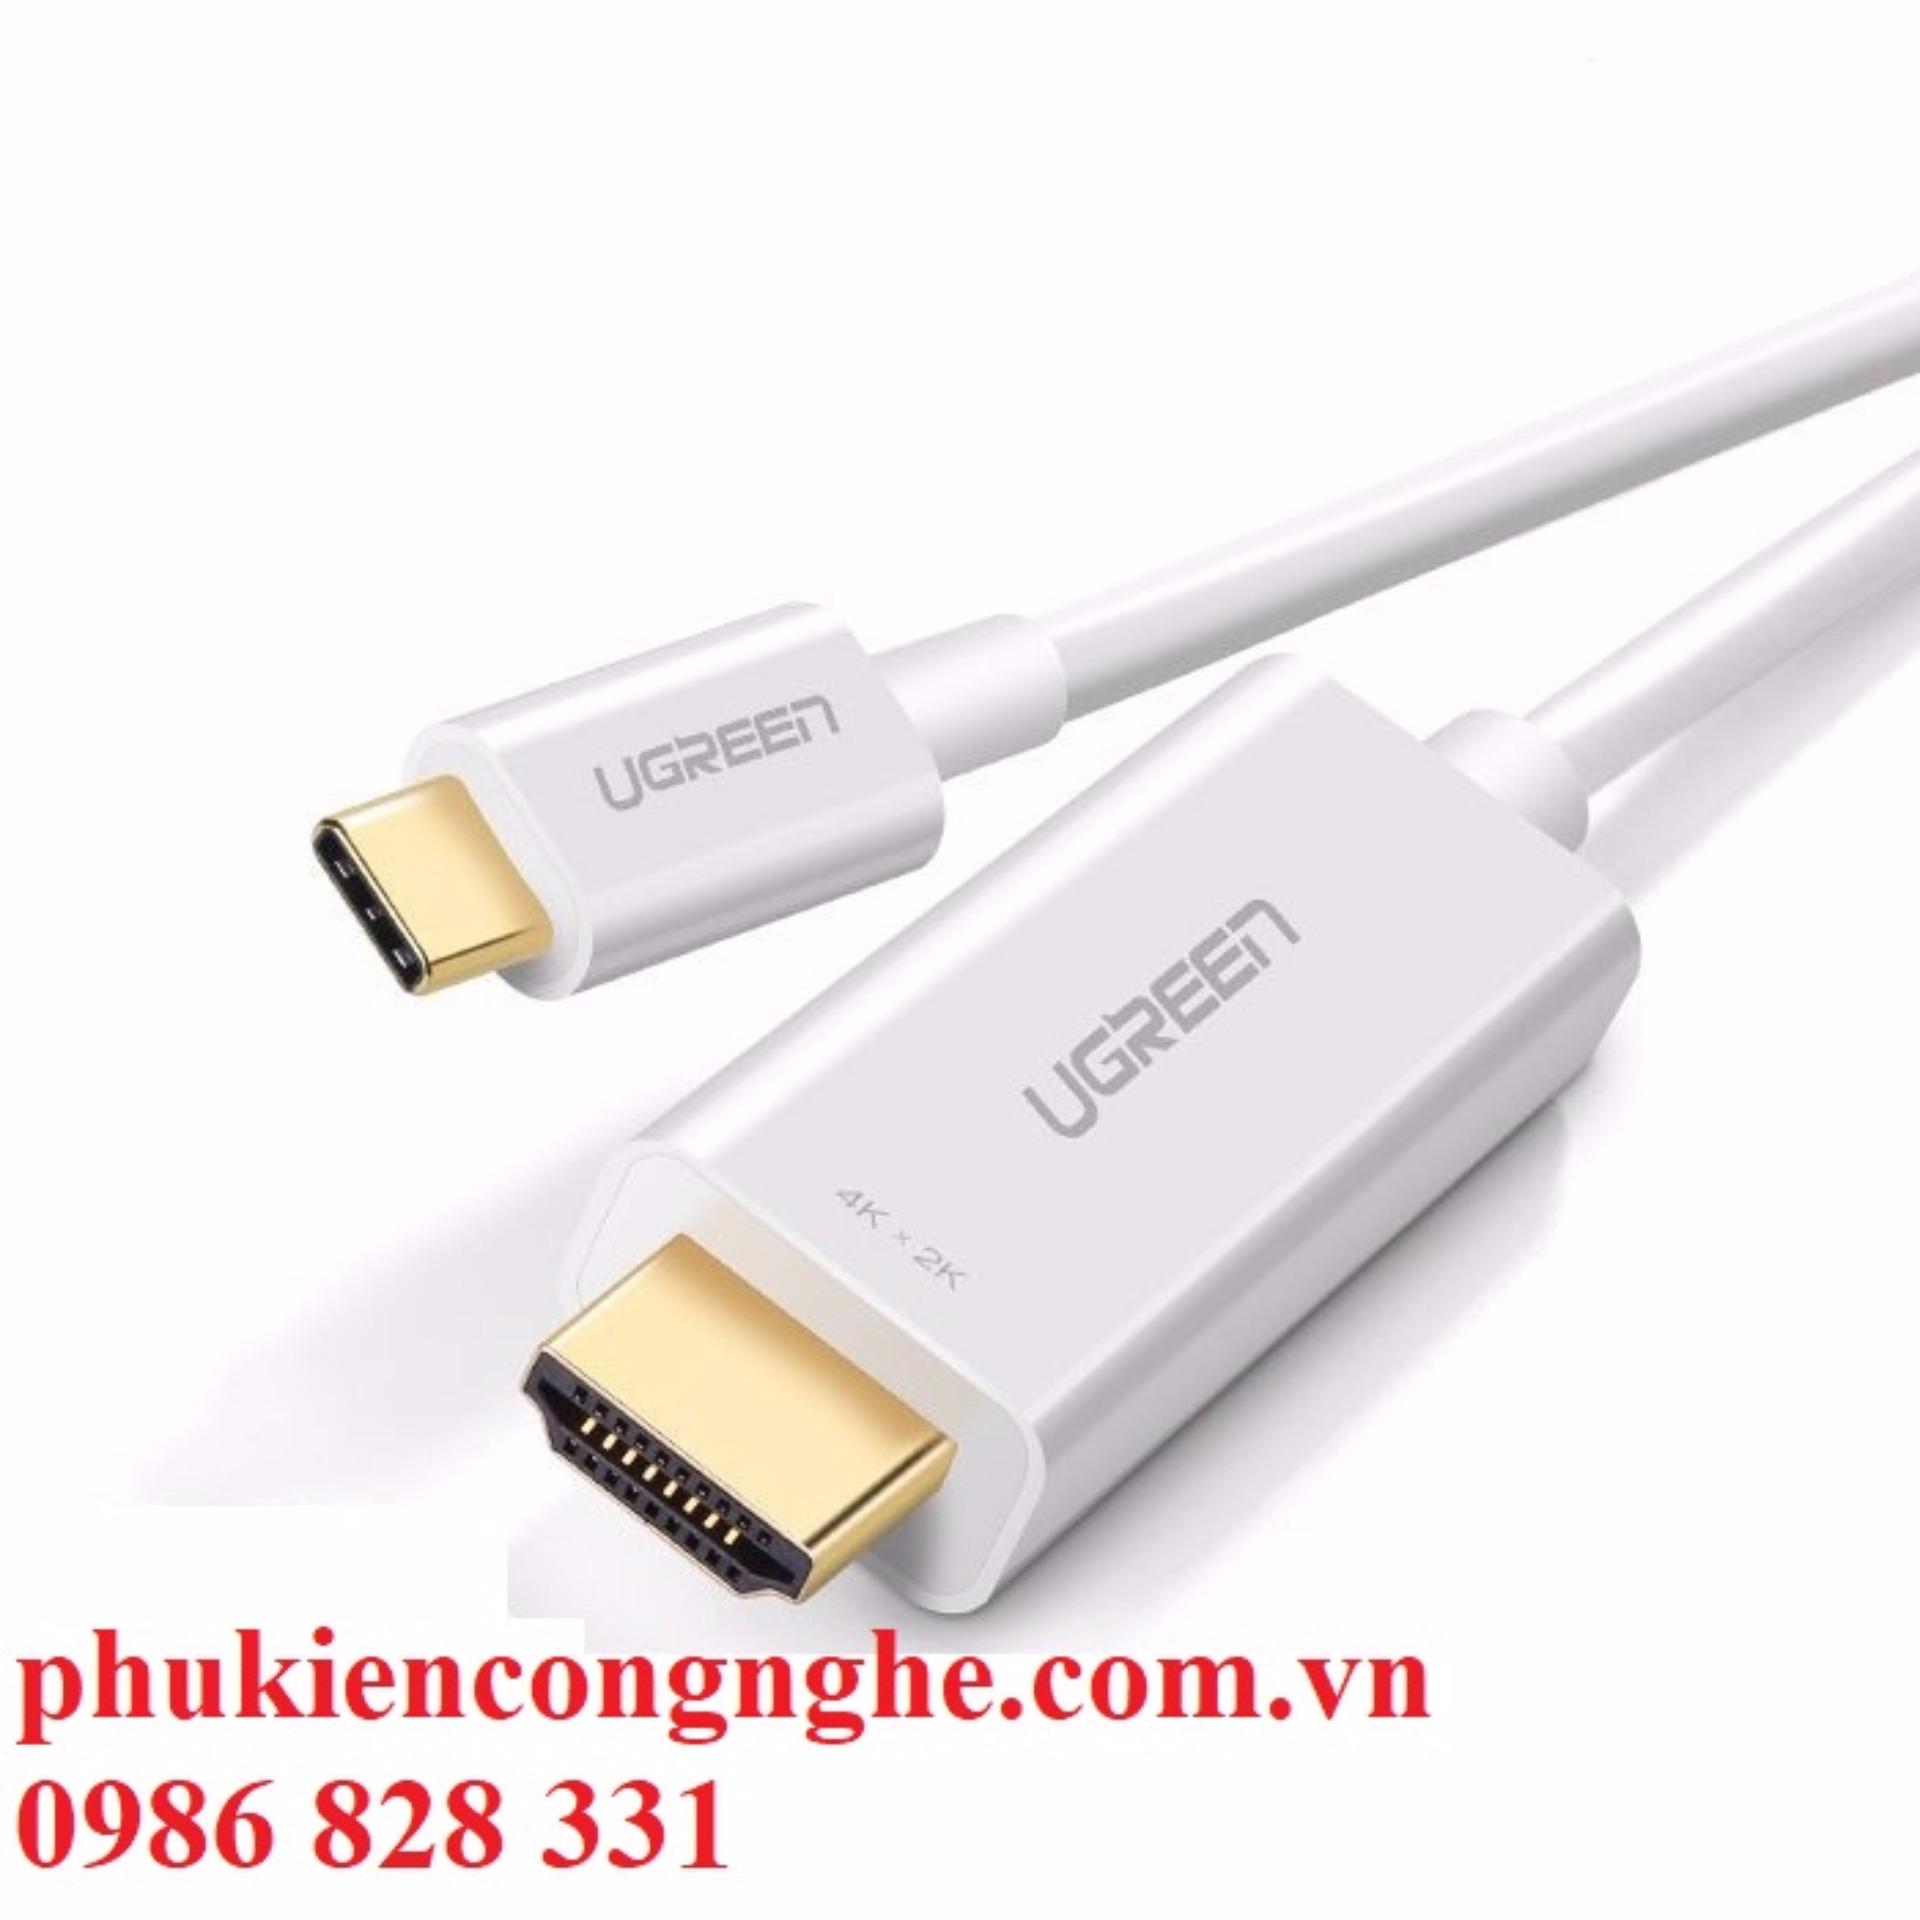 Cáp kết nối USB Type C to HDMI dài 1,5m hỗ trợ 3D, 4K Ugreen 30841